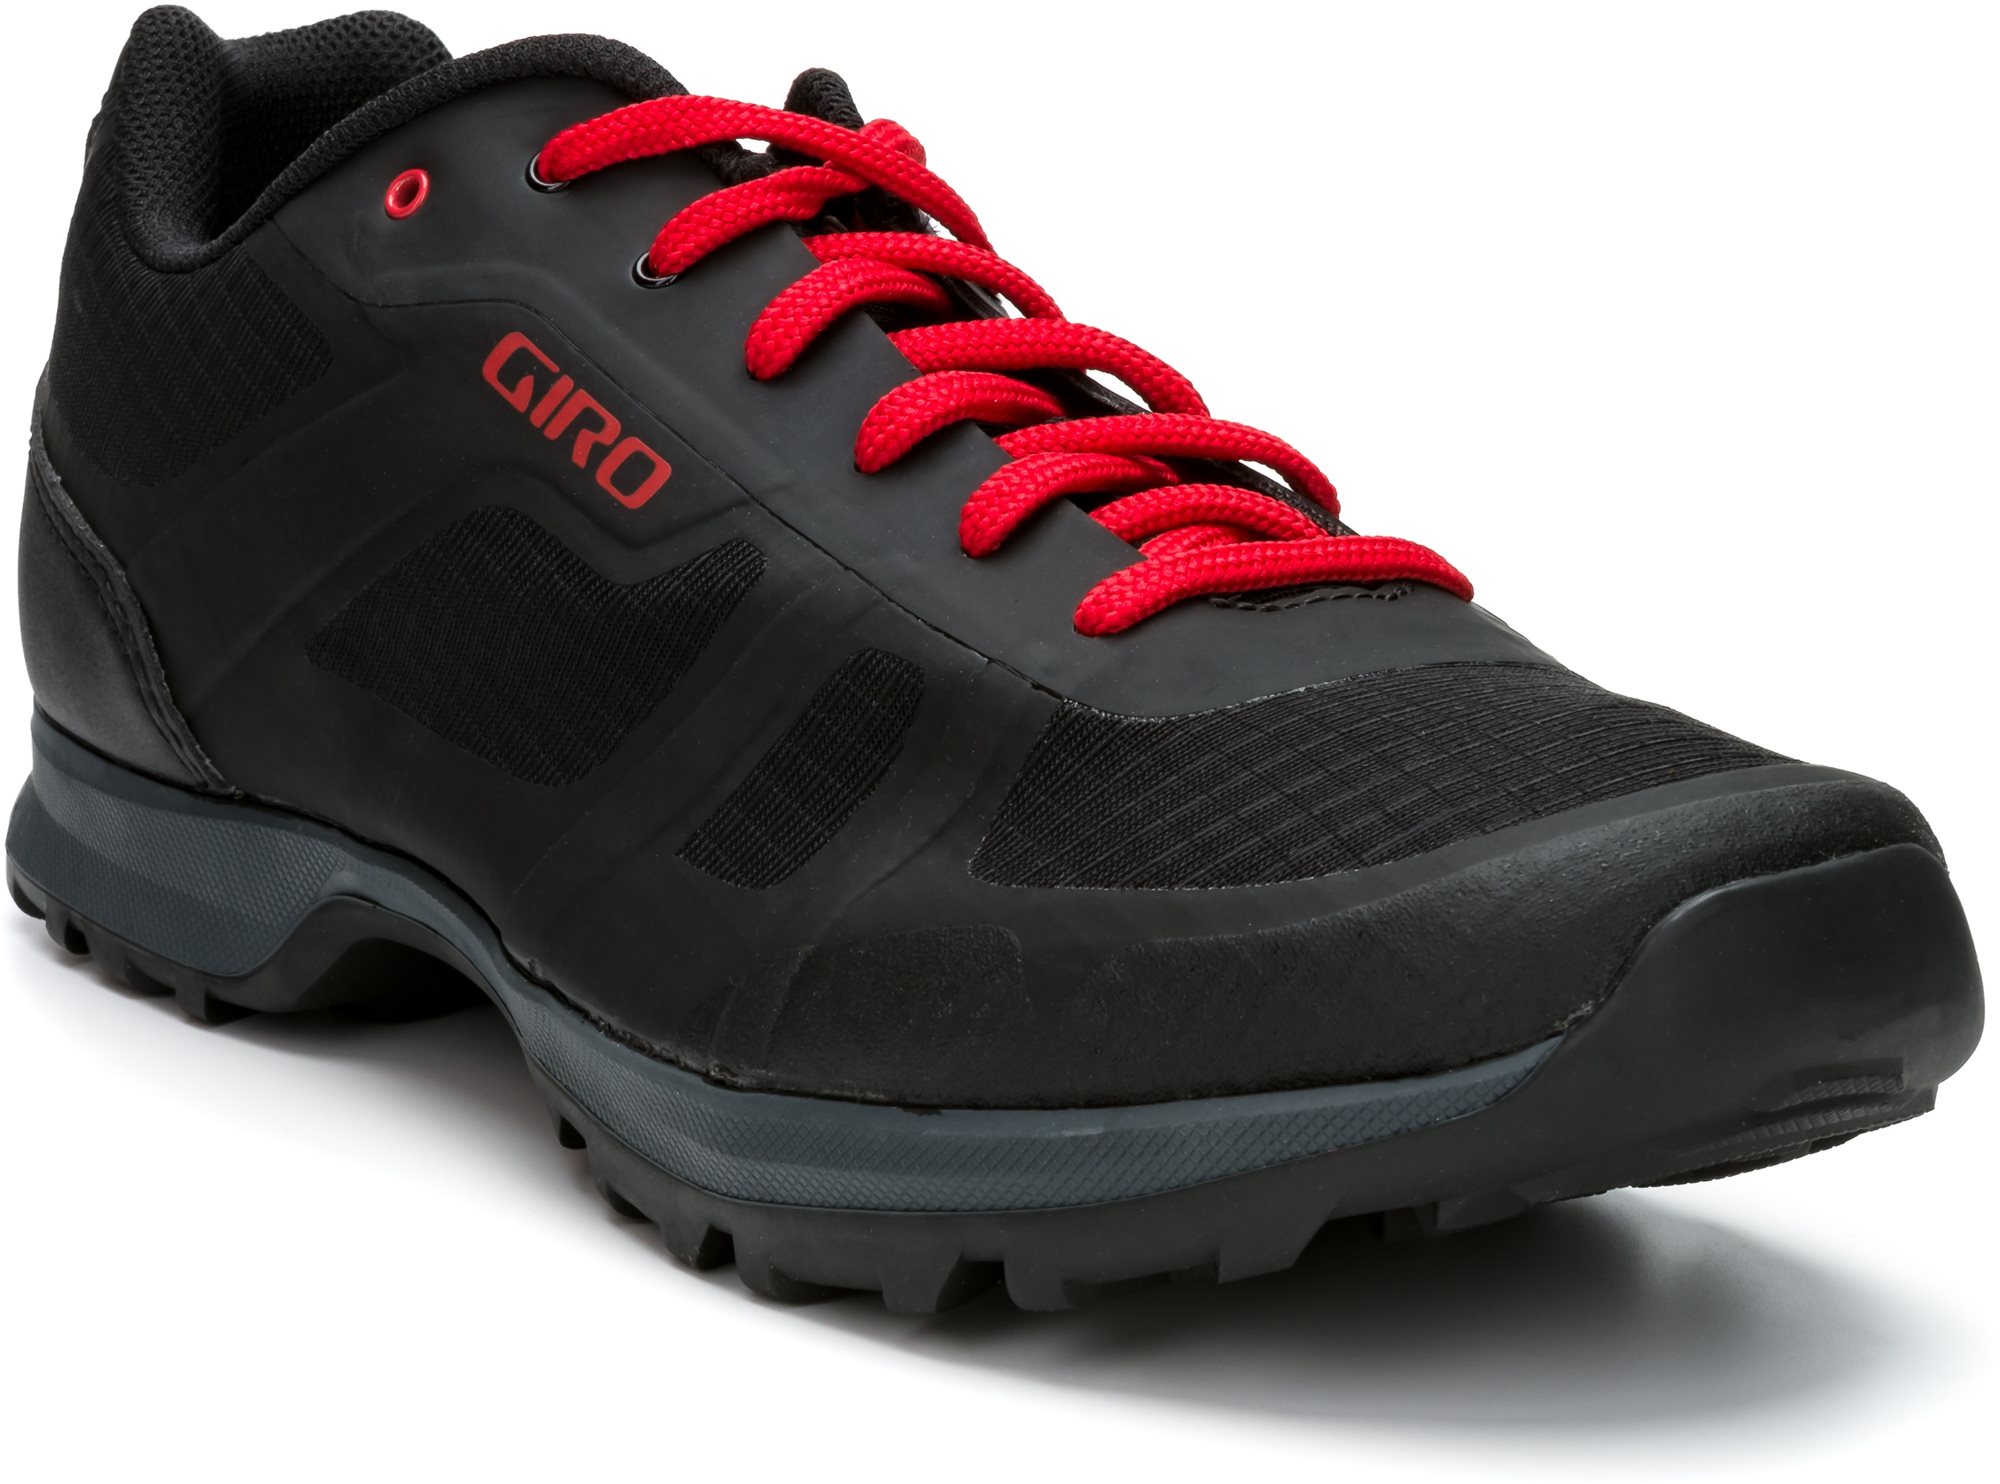 GIRO Gauge kerékpáros cipő, fekete/világos piros, 43-as